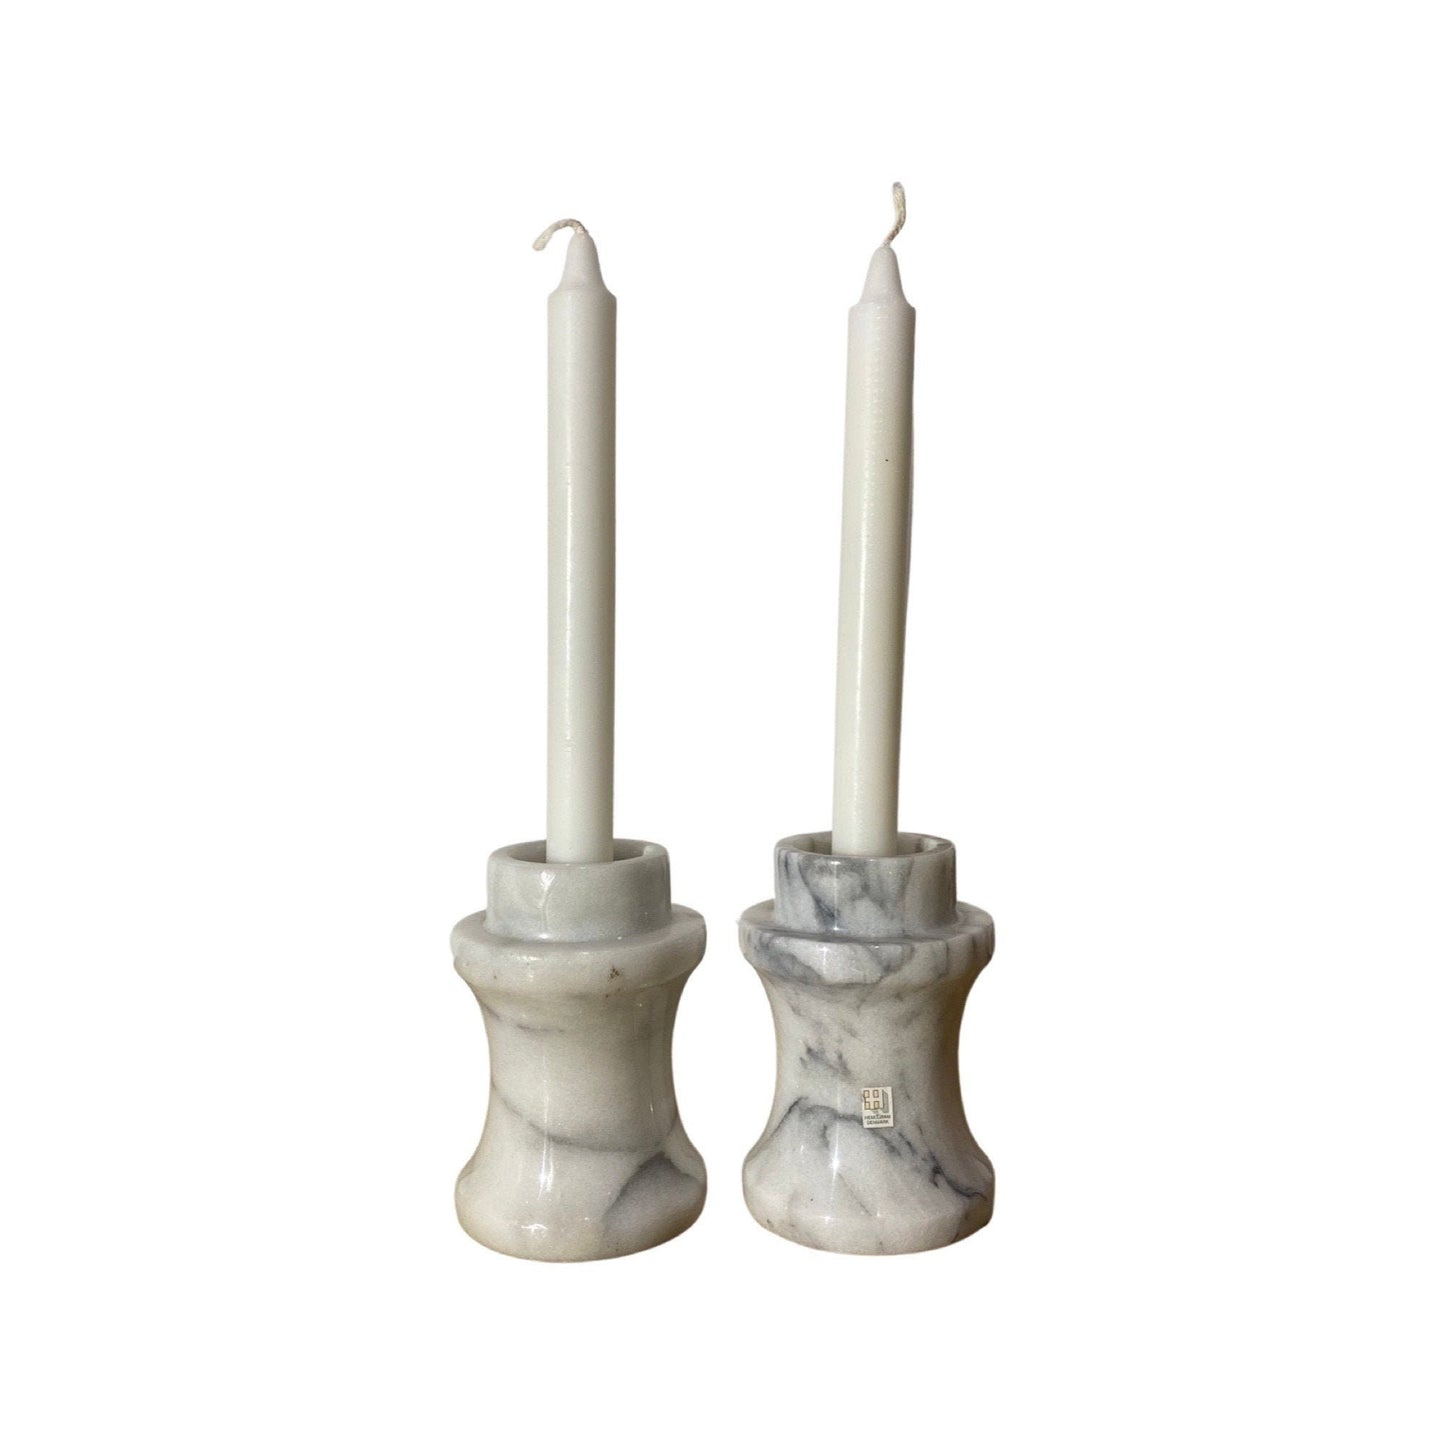 2 Vintage HEMOGRAM Denmark Marble Candlestick Holders | Set of 2 Candle Stick Holders | Candlesticks and Big Candles PLAYFUL Marble Pattern